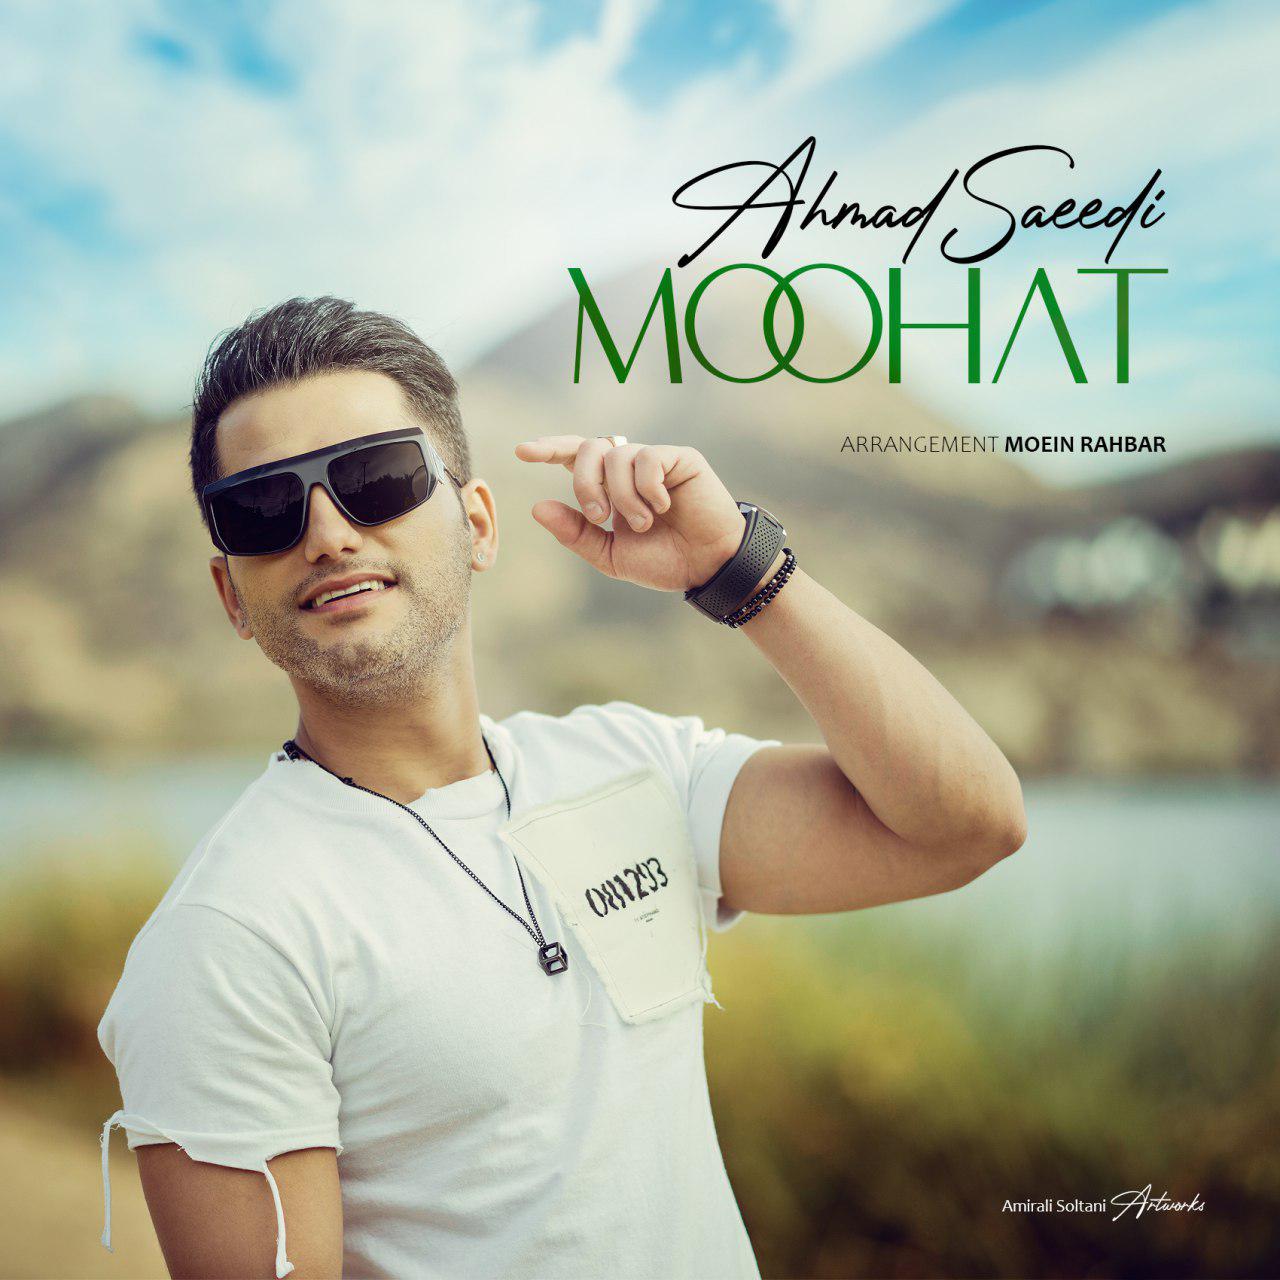  دانلود آهنگ جدید احمد سعیدی - موهات | Download New Music By Ahmad Saeedi - Moohat